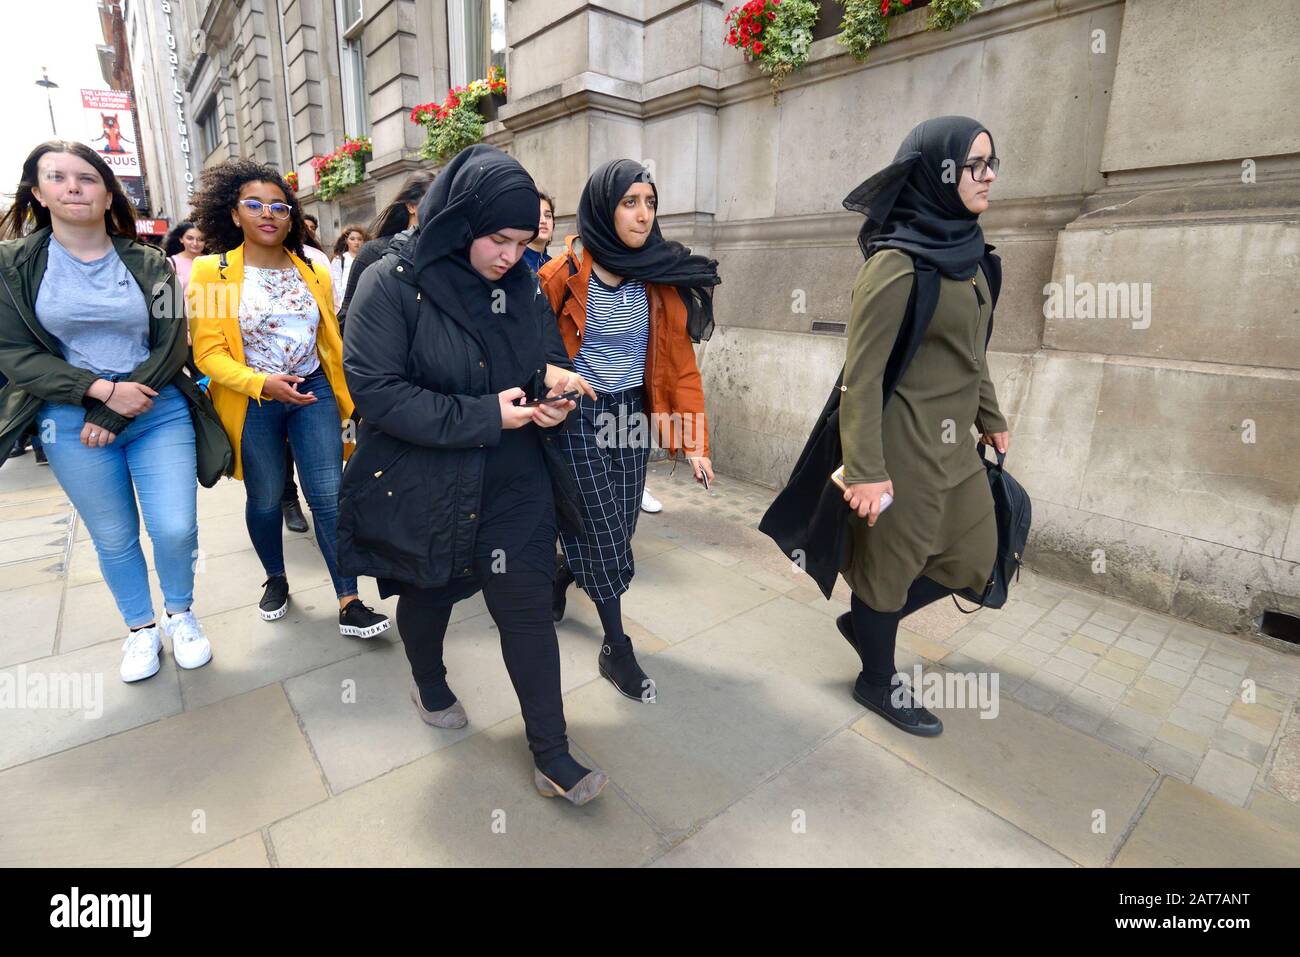 Londres, Angleterre, Royaume-Uni. Les jeunes femmes portent des foulards dans le centre de Londres Banque D'Images